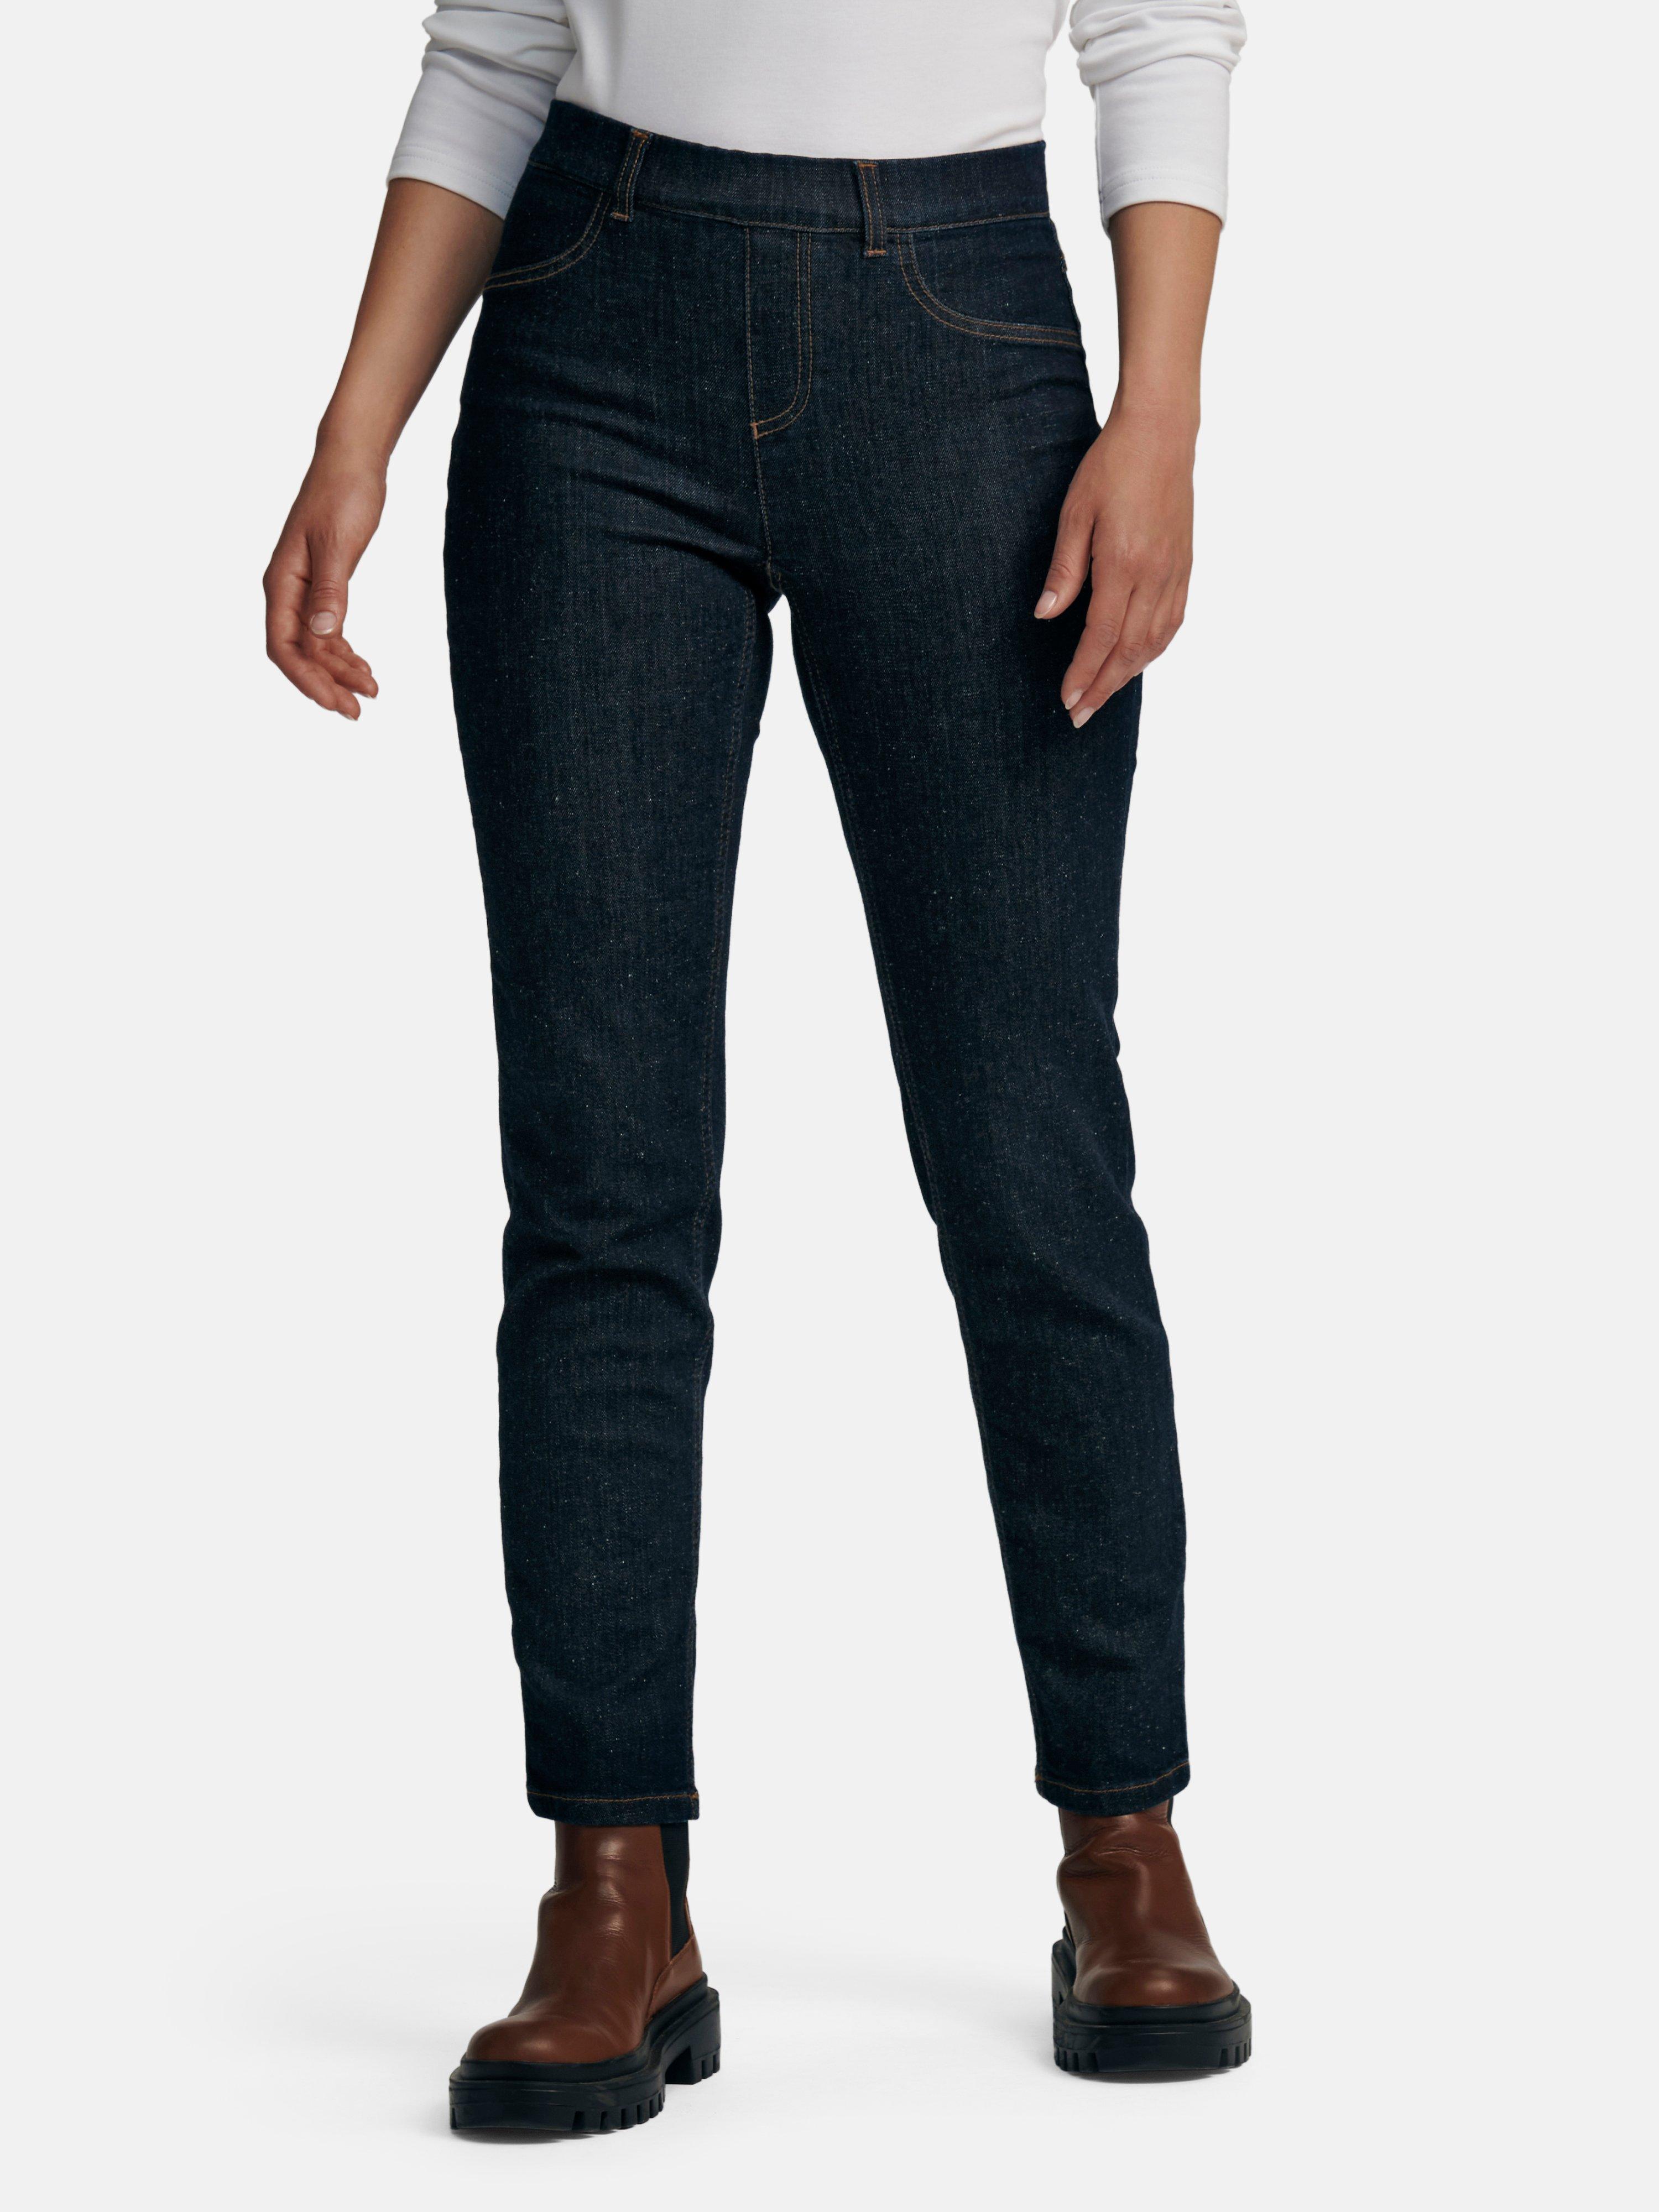 Hahn Jeans Gummizug mit jetzt im Peter Online-Shop kaufen